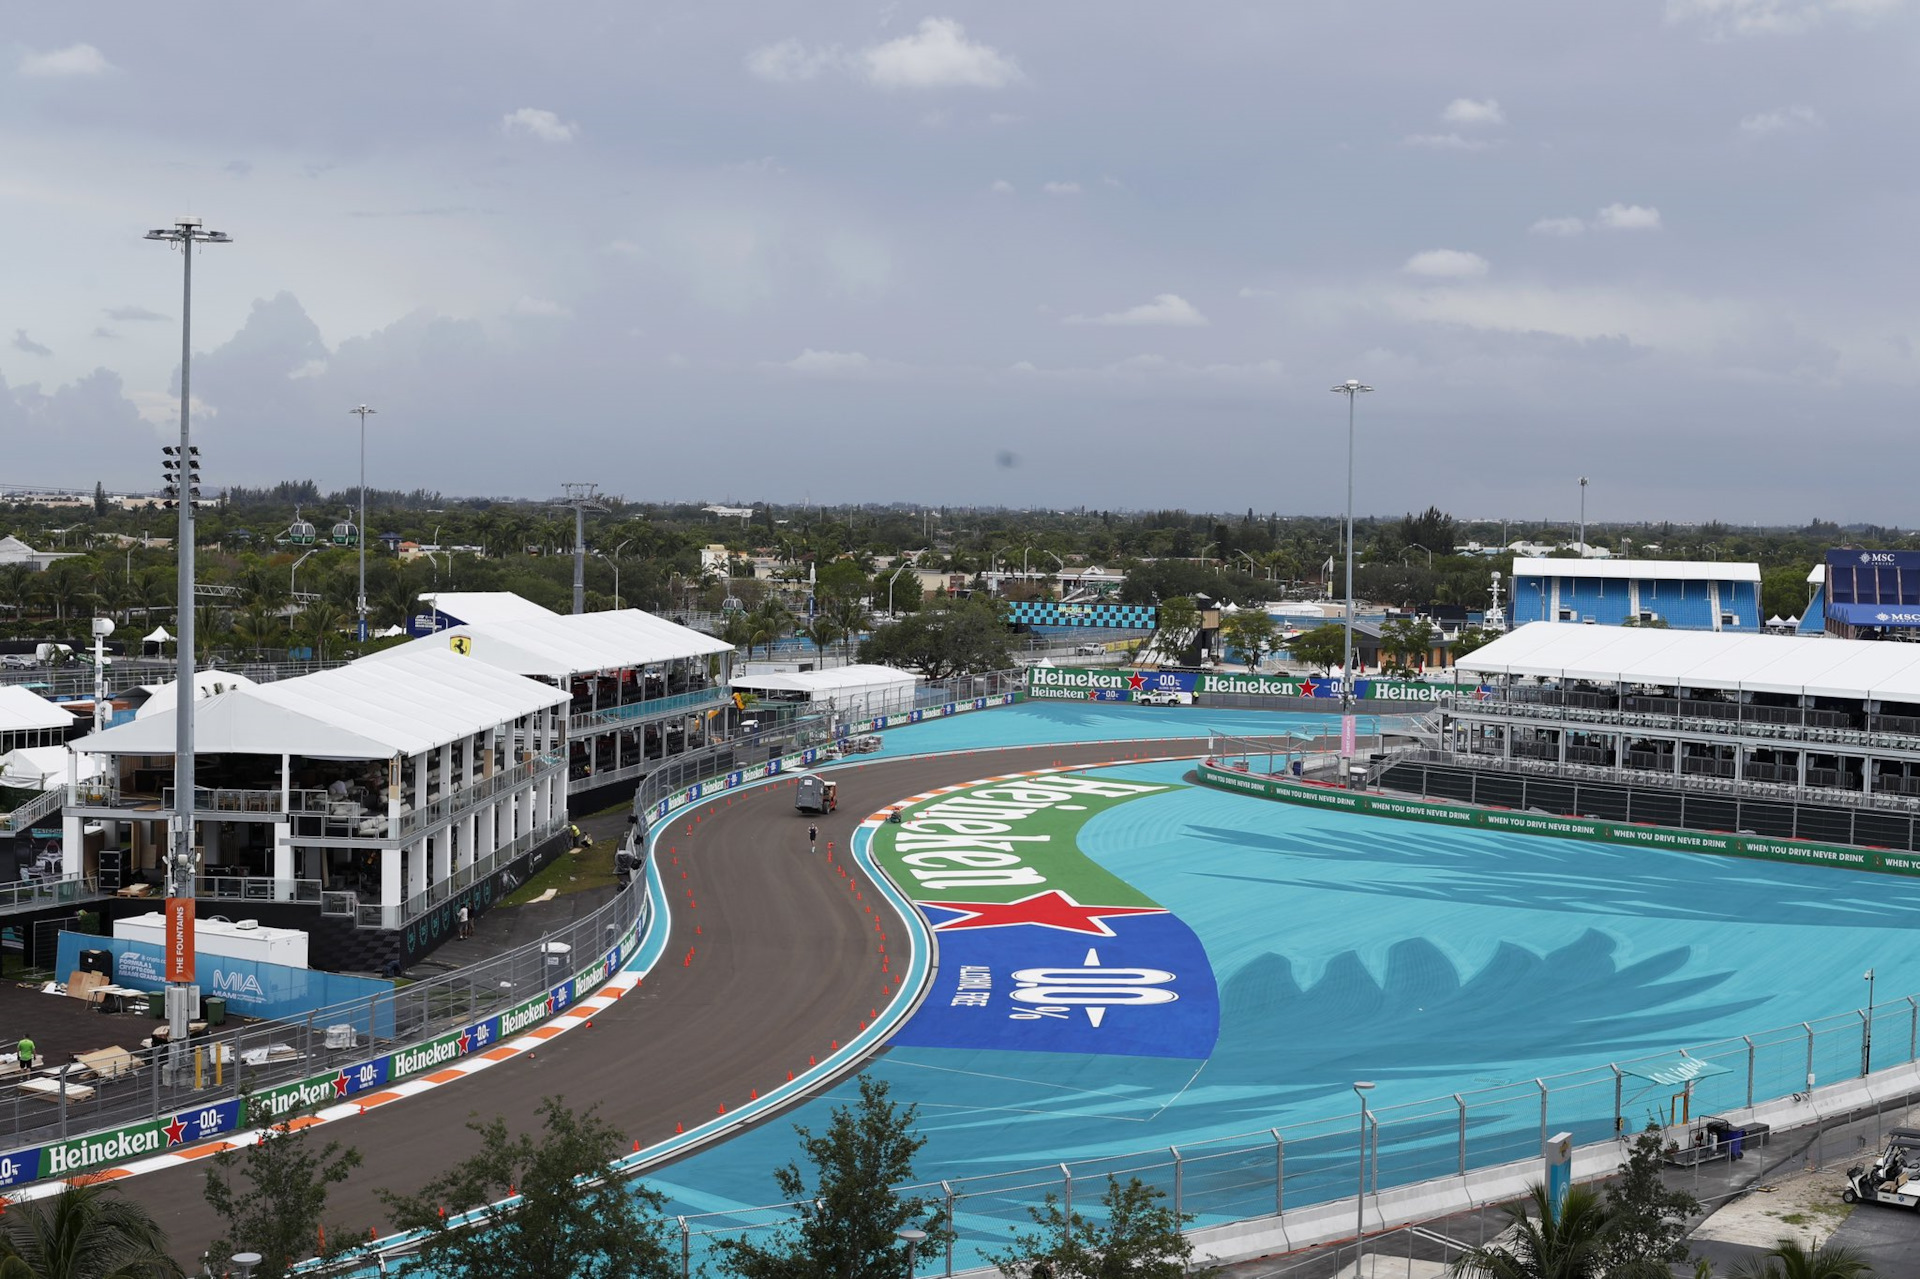 Ошибки в финальной попытке стали роковыми для участников спринт-квалификации Гран-при Майами.